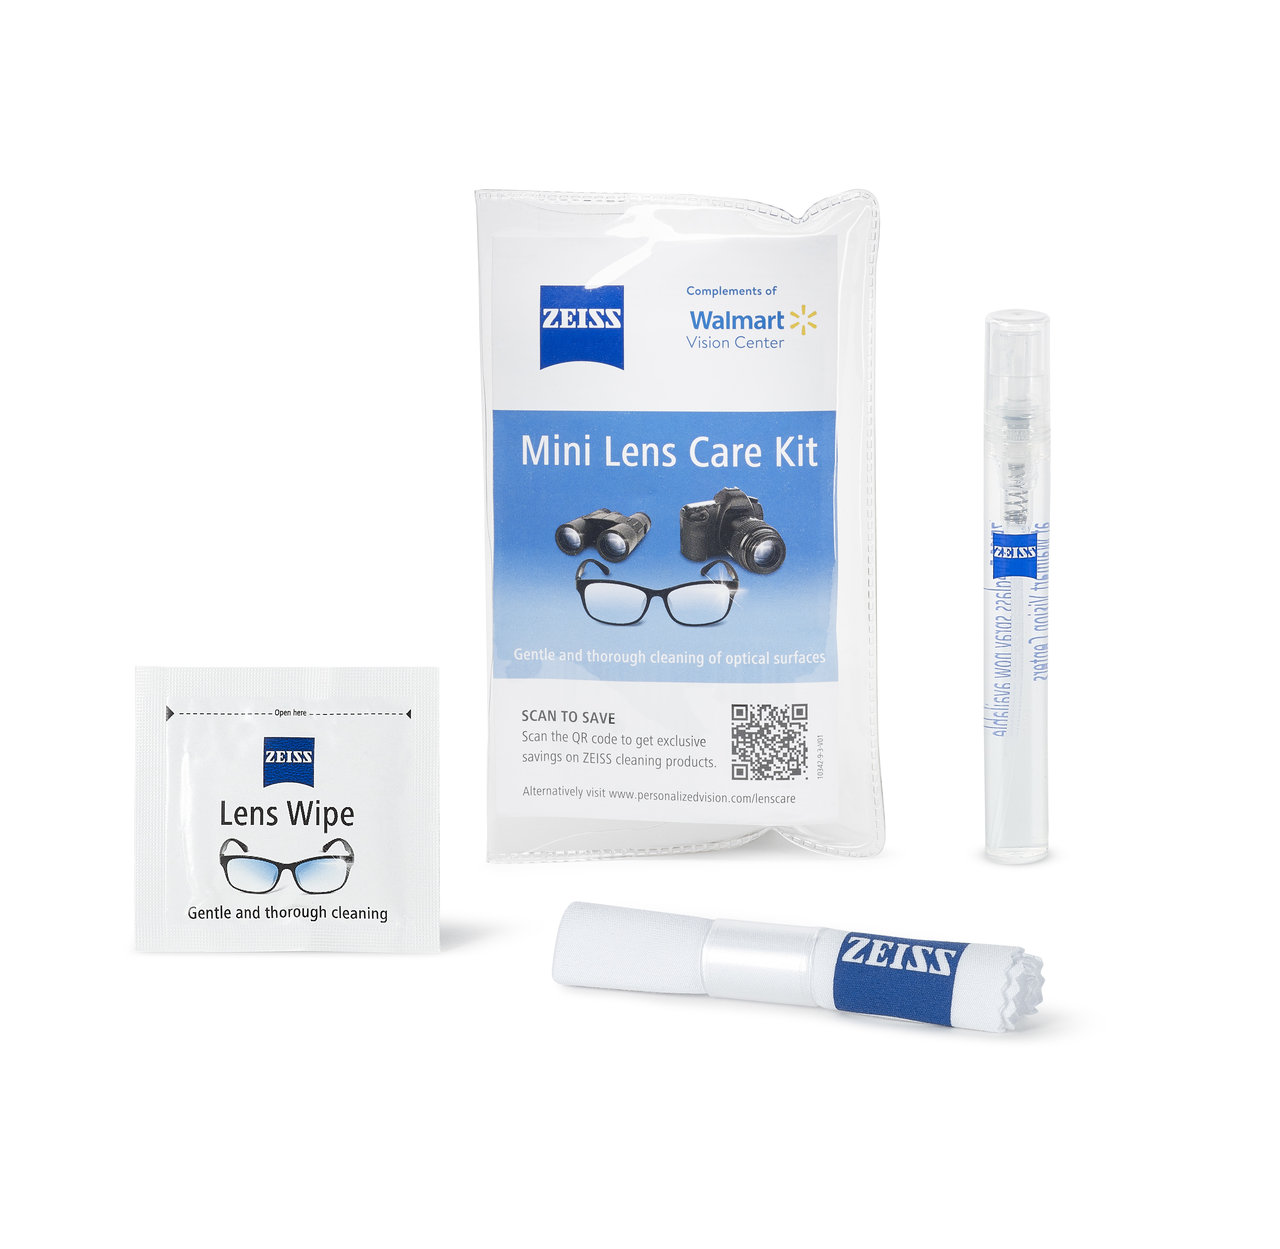 Zeiss Walmart Mini Lens Care Kit Contents